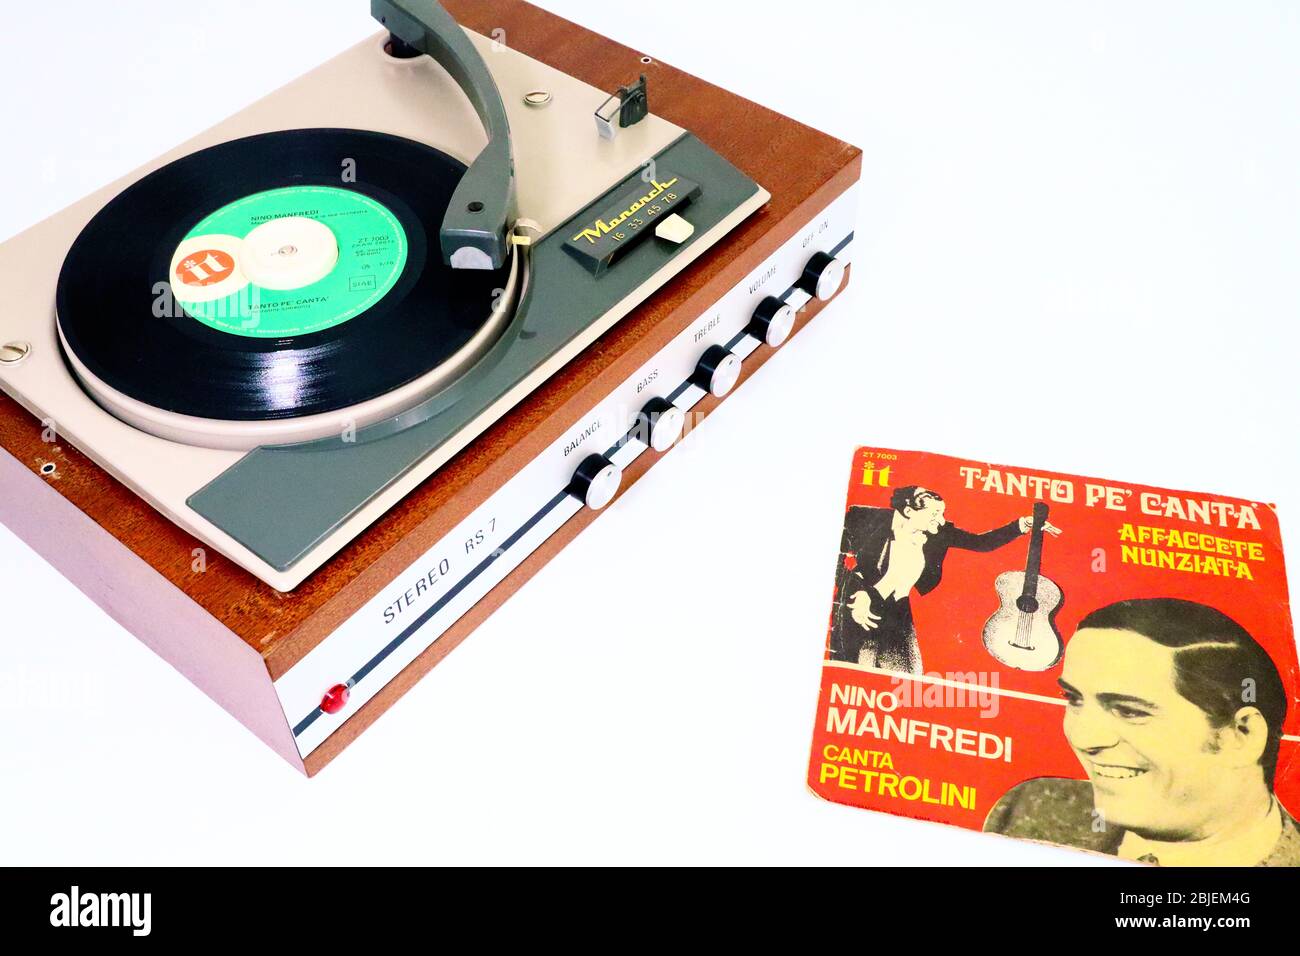 NINO MANFREDI, Tanto pe' Canta' and Affaccete Nunziata, 1970 Vinyl Record on 1966 MONARCH Record Player Stock Photo